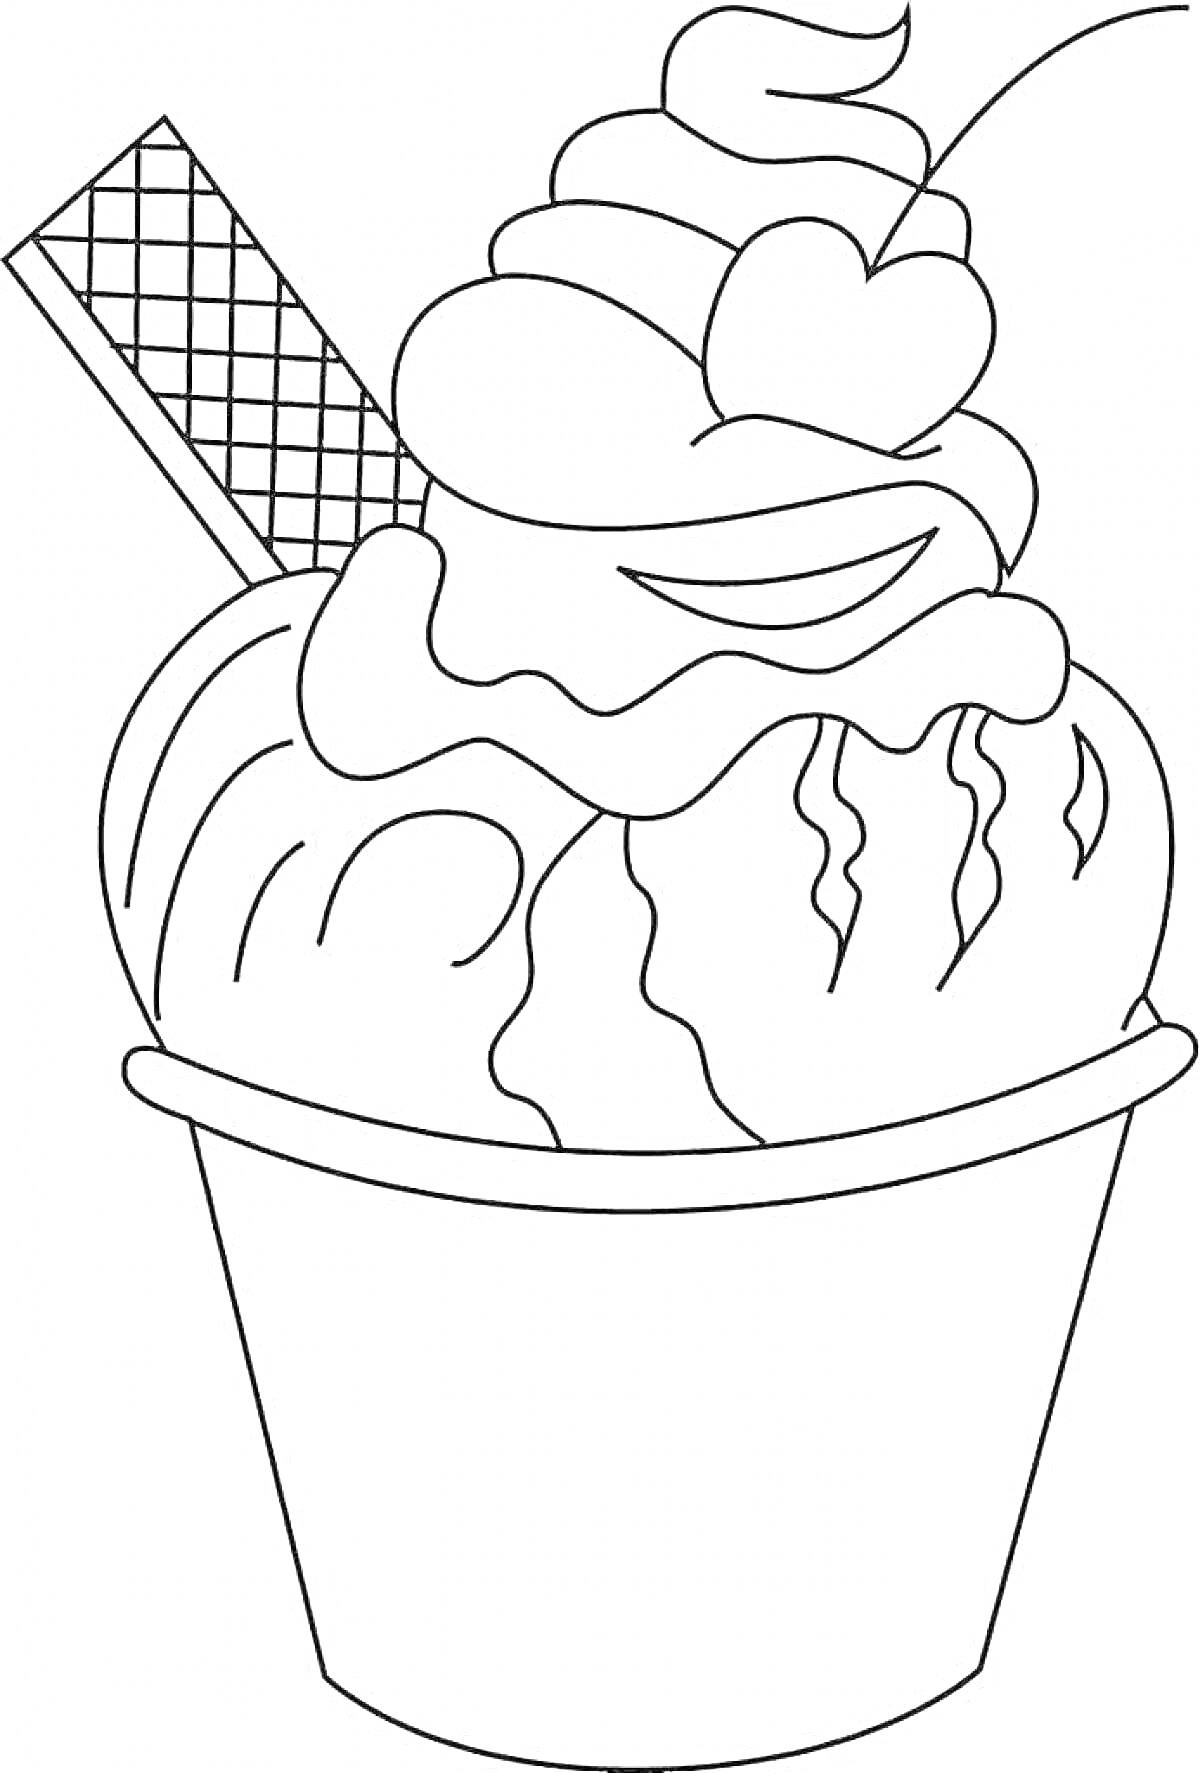 Раскраска Мороженое в стаканчике с вафелькой, взбитыми сливками и вишенкой